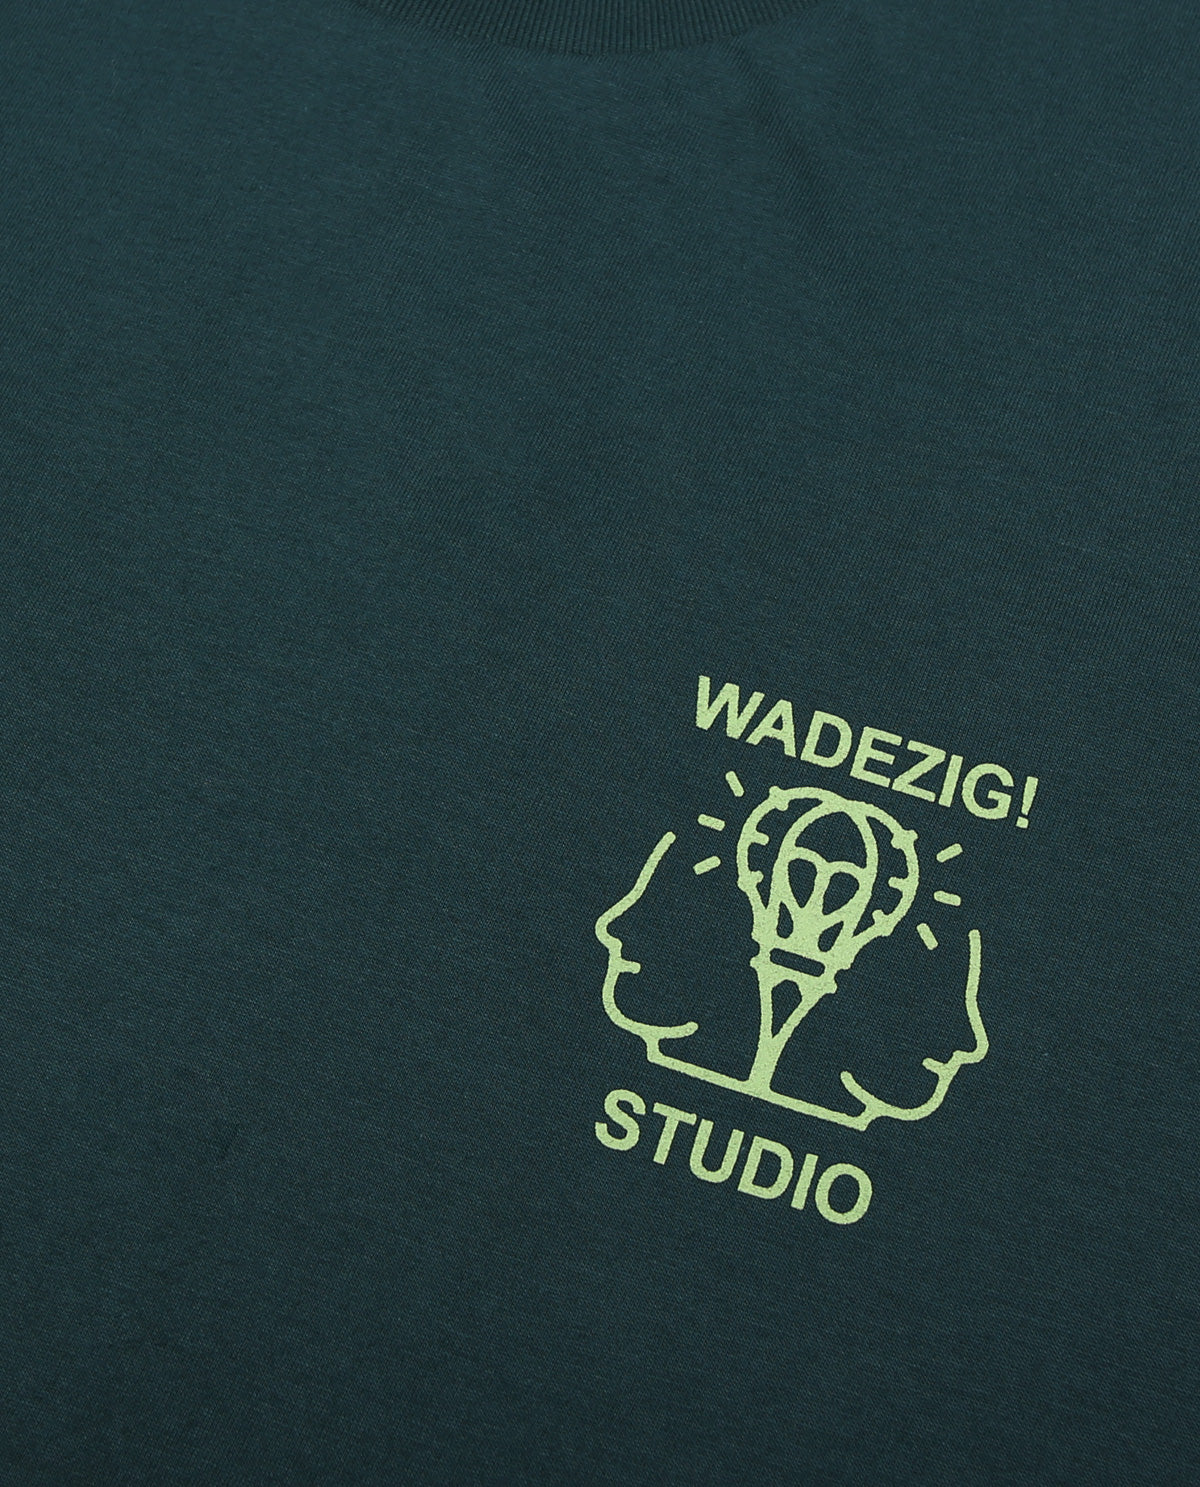 Wadezig! T-Shirt - Ideas Green Tees